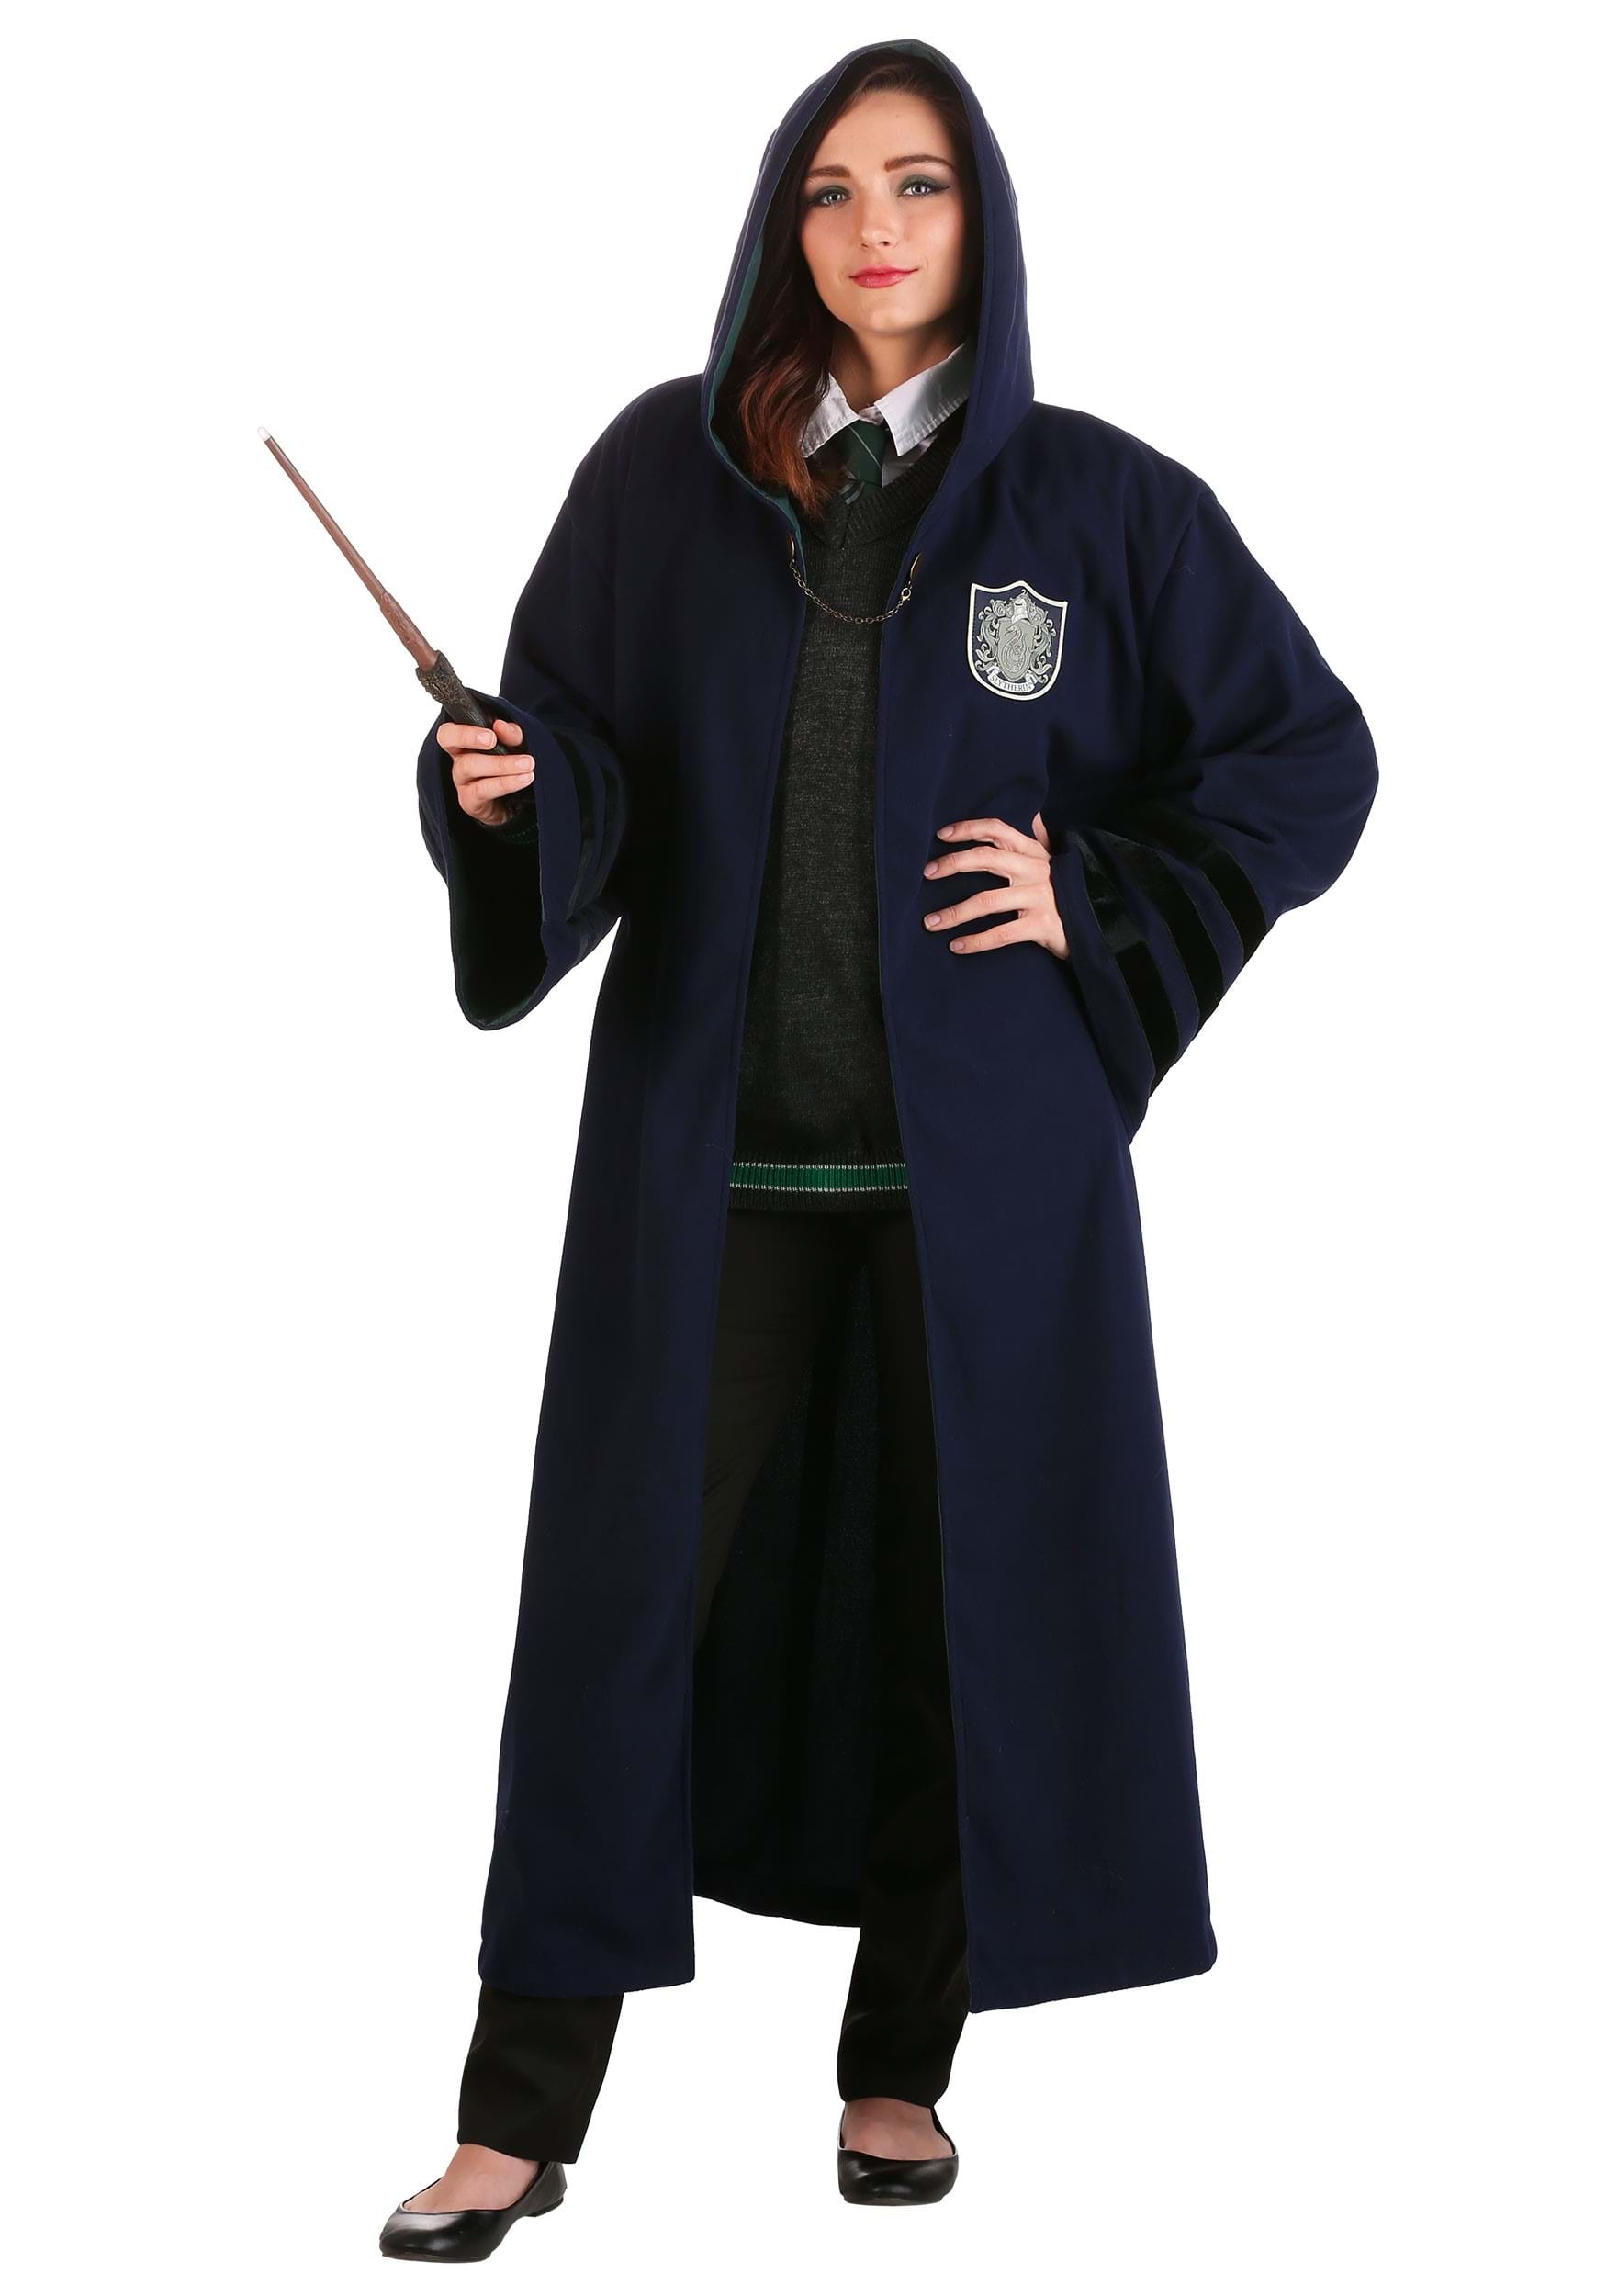 Harry Potter Adult Harry Potter Slytherin Robe